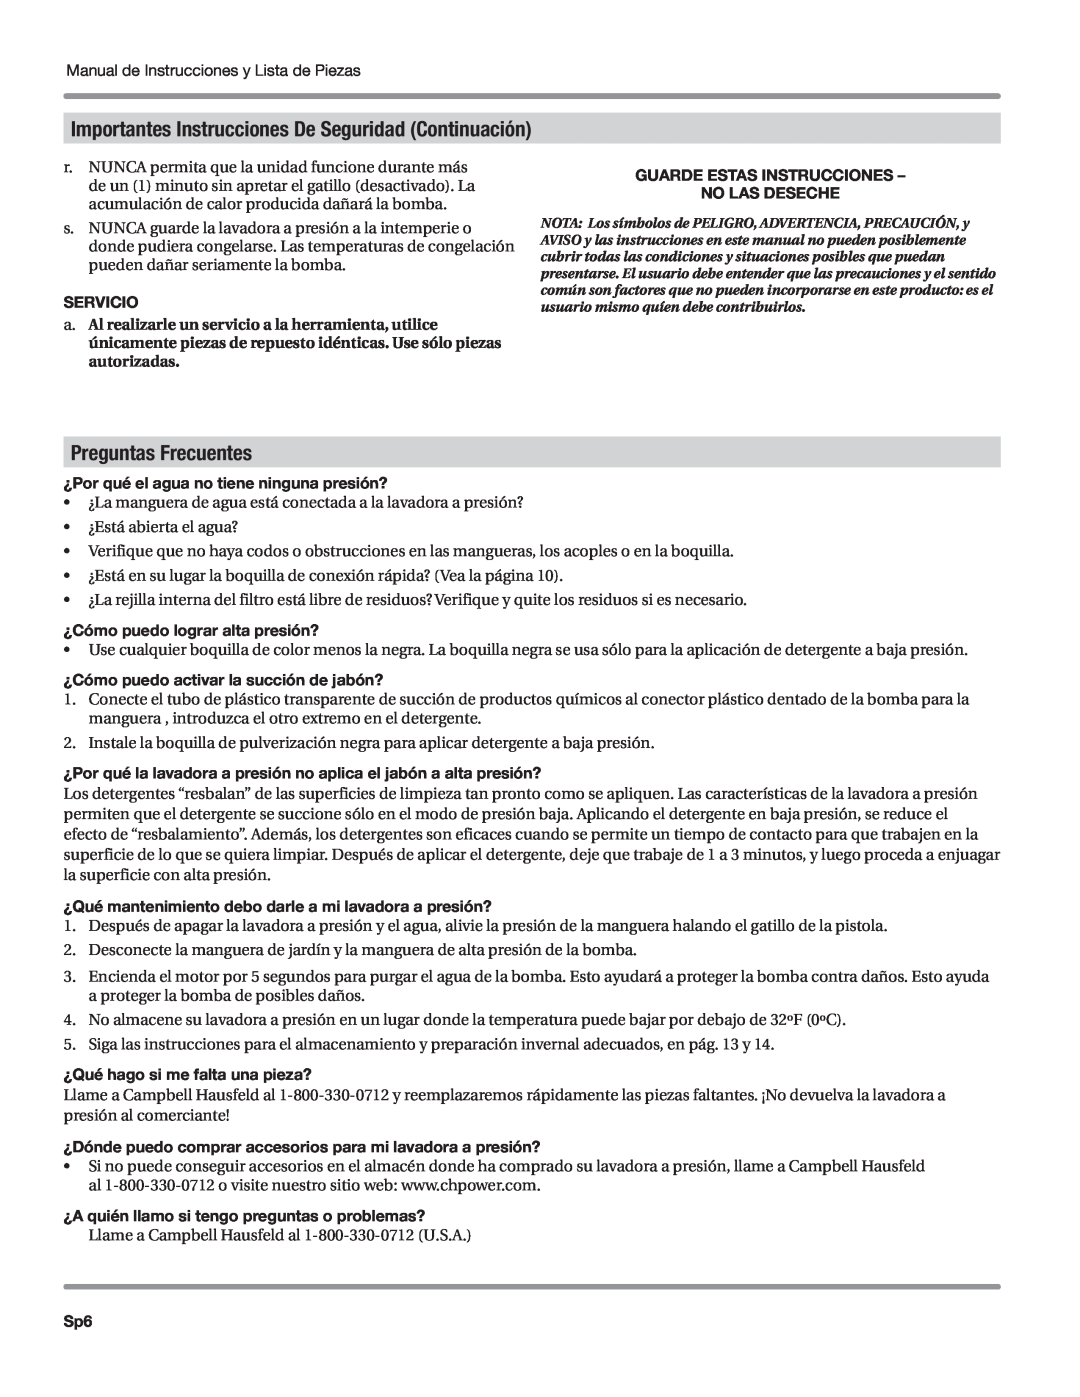 Campbell Hausfeld CP5101 manual Importantes Instrucciones De Seguridad Continuación, Preguntas Frecuentes, Servicio 